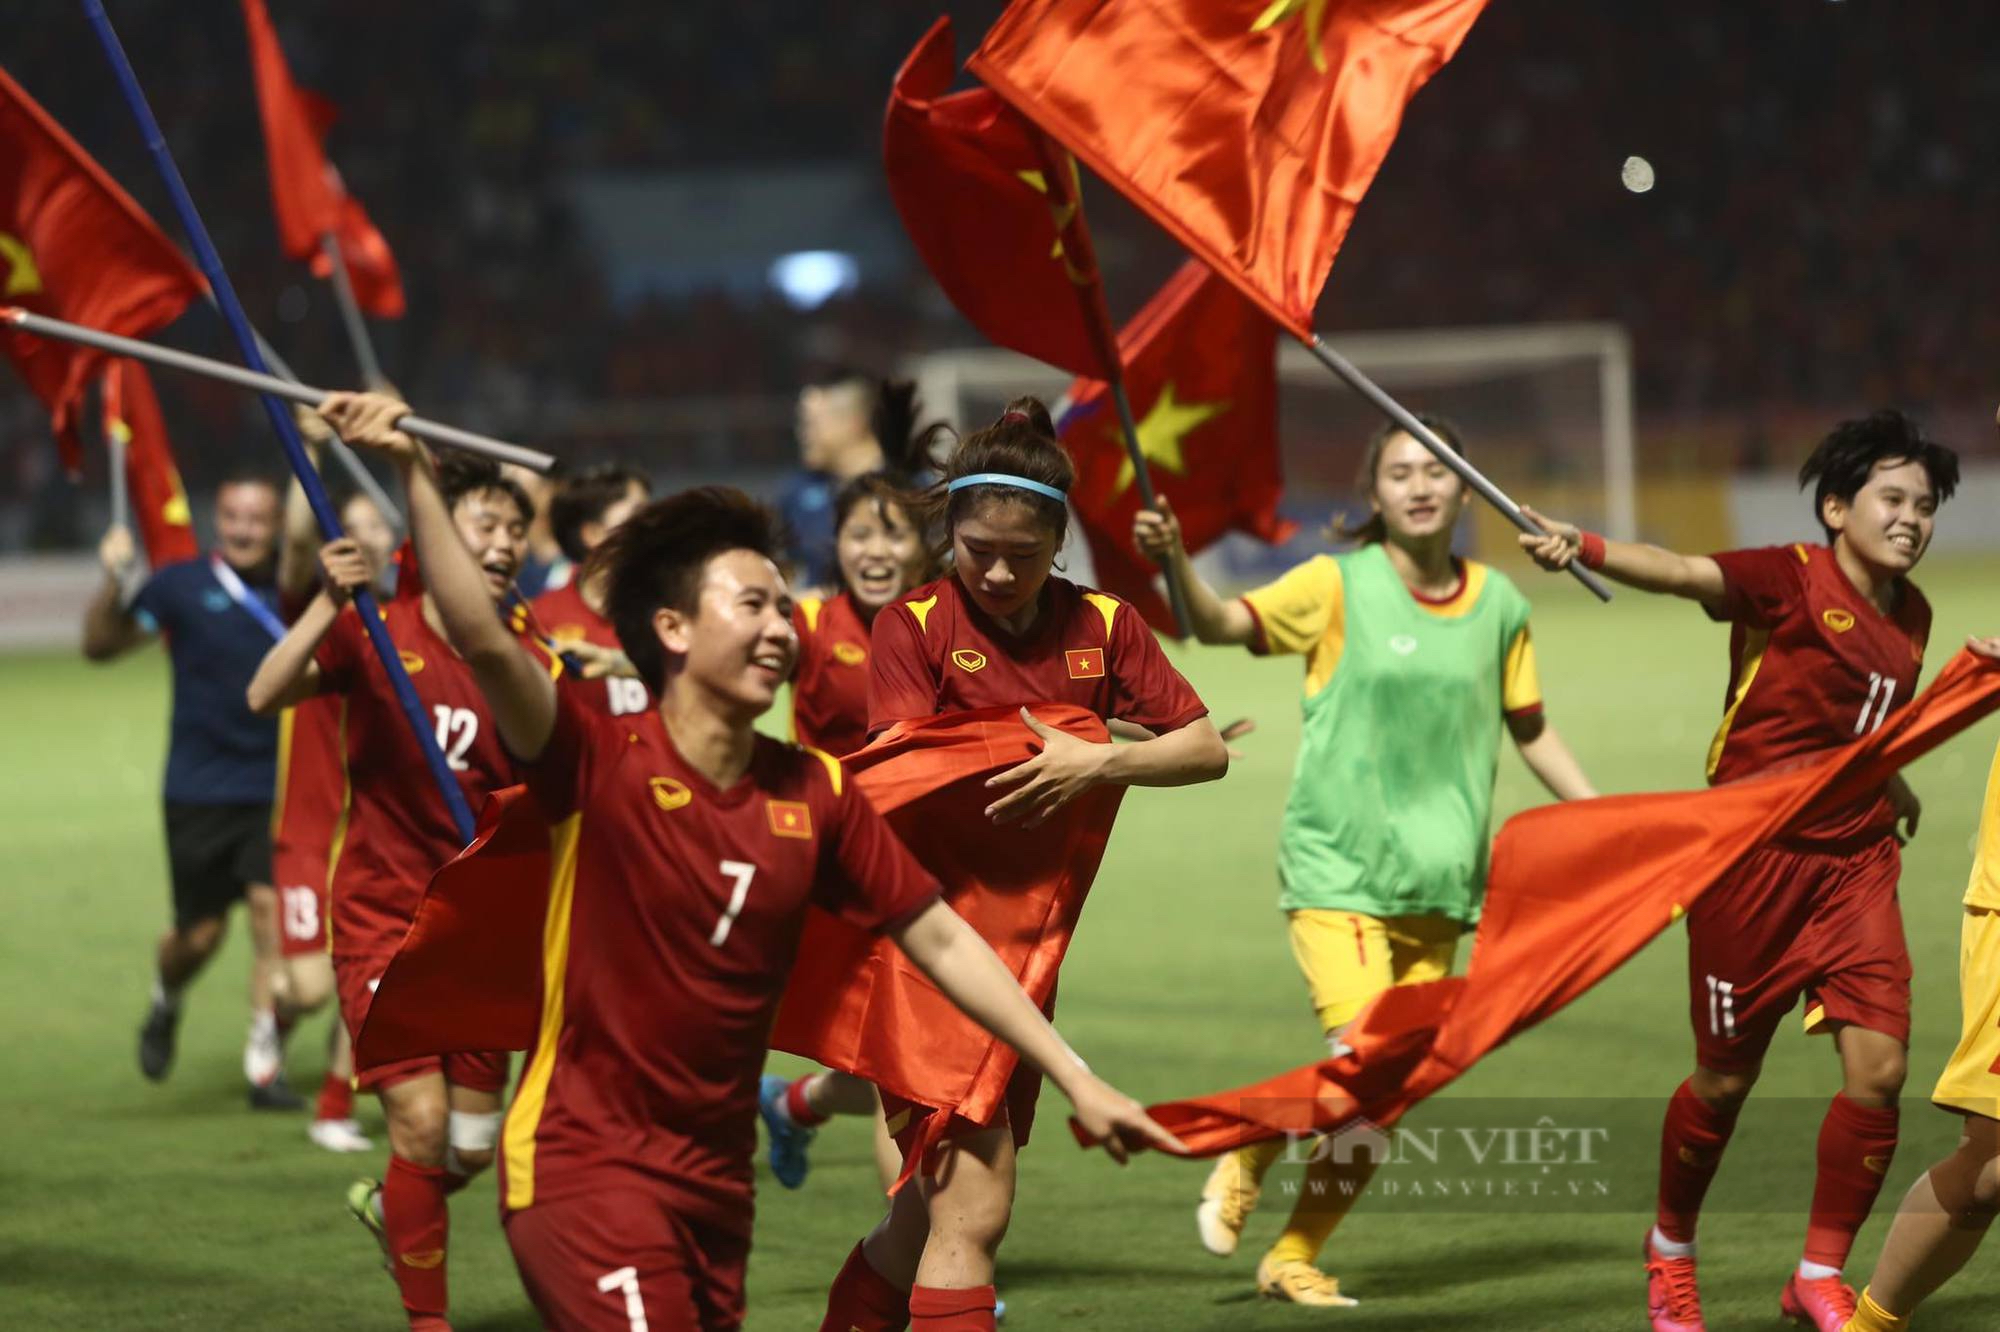 Đội tuyển bóng đá nữ Việt Nam luôn đại diện cho sự kiên cường, nỗ lực và tinh thần đoàn kết của phái nữ Việt Nam. Với những thành tích ấn tượng trong các giải đấu quốc tế, đội tuyển nữ Việt Nam đã thu hút sự quan tâm của nhiều người hâm mộ. Hãy cùng nhau xem hình ảnh đội tuyển nữ Việt Nam tầm cao mới, cổ vũ cho những cô gái Việt Nam đầy nghị lực.